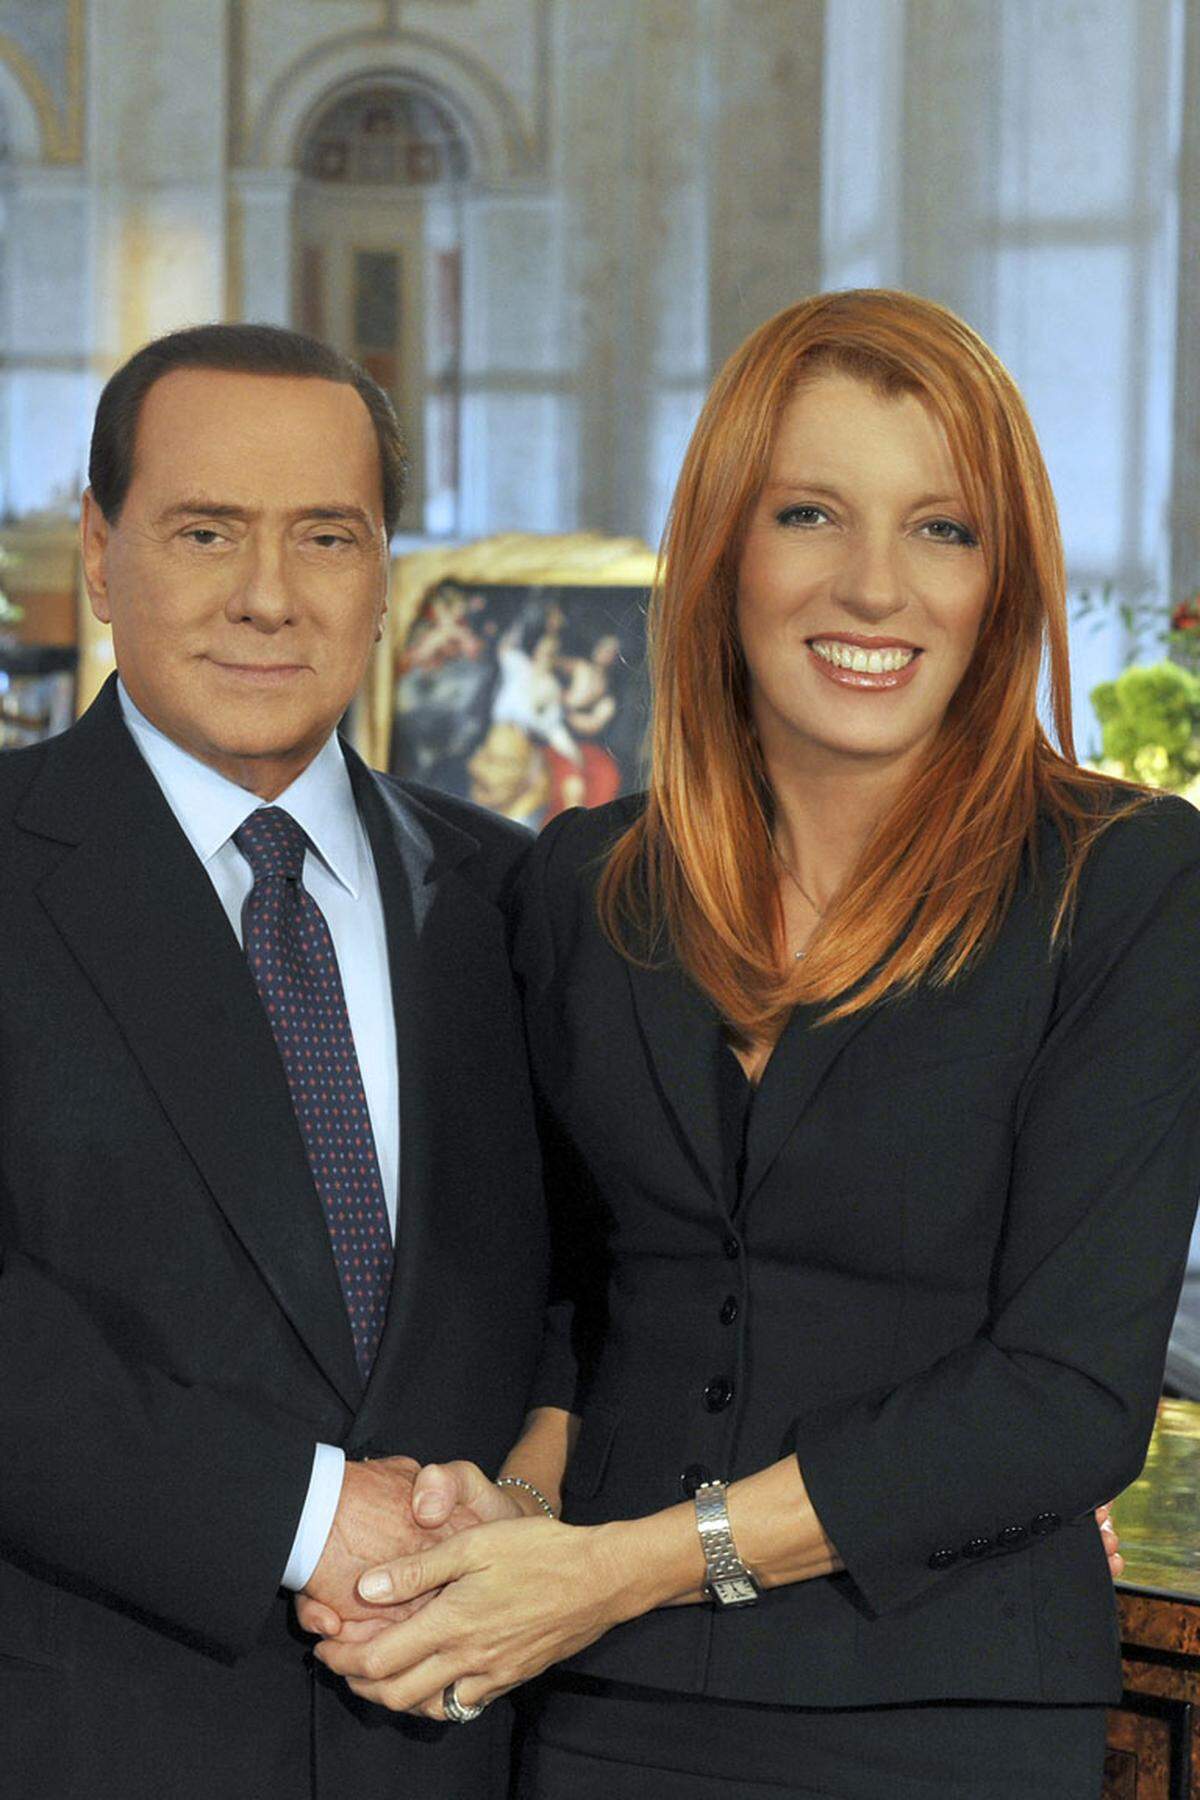 Auf diese Frauen kann sich Silvio Berlusconi auch in den schwierigsten Zeiten hundertprozentig verlassen: auf seine "Amazonen". So nennen italienische Medien die Hardliner(innen) innerhalb des "Volks der Freiheit", die kompromisslos und loyal hinter ihrem Chef stehen. Sie sind es, die seit der Verurteilung des Cavaliere lautstark "Verrat" brüllen und Neuwahlen fordern. von Susanna Bastorolli Bild: Berlusconi mit Brambilla